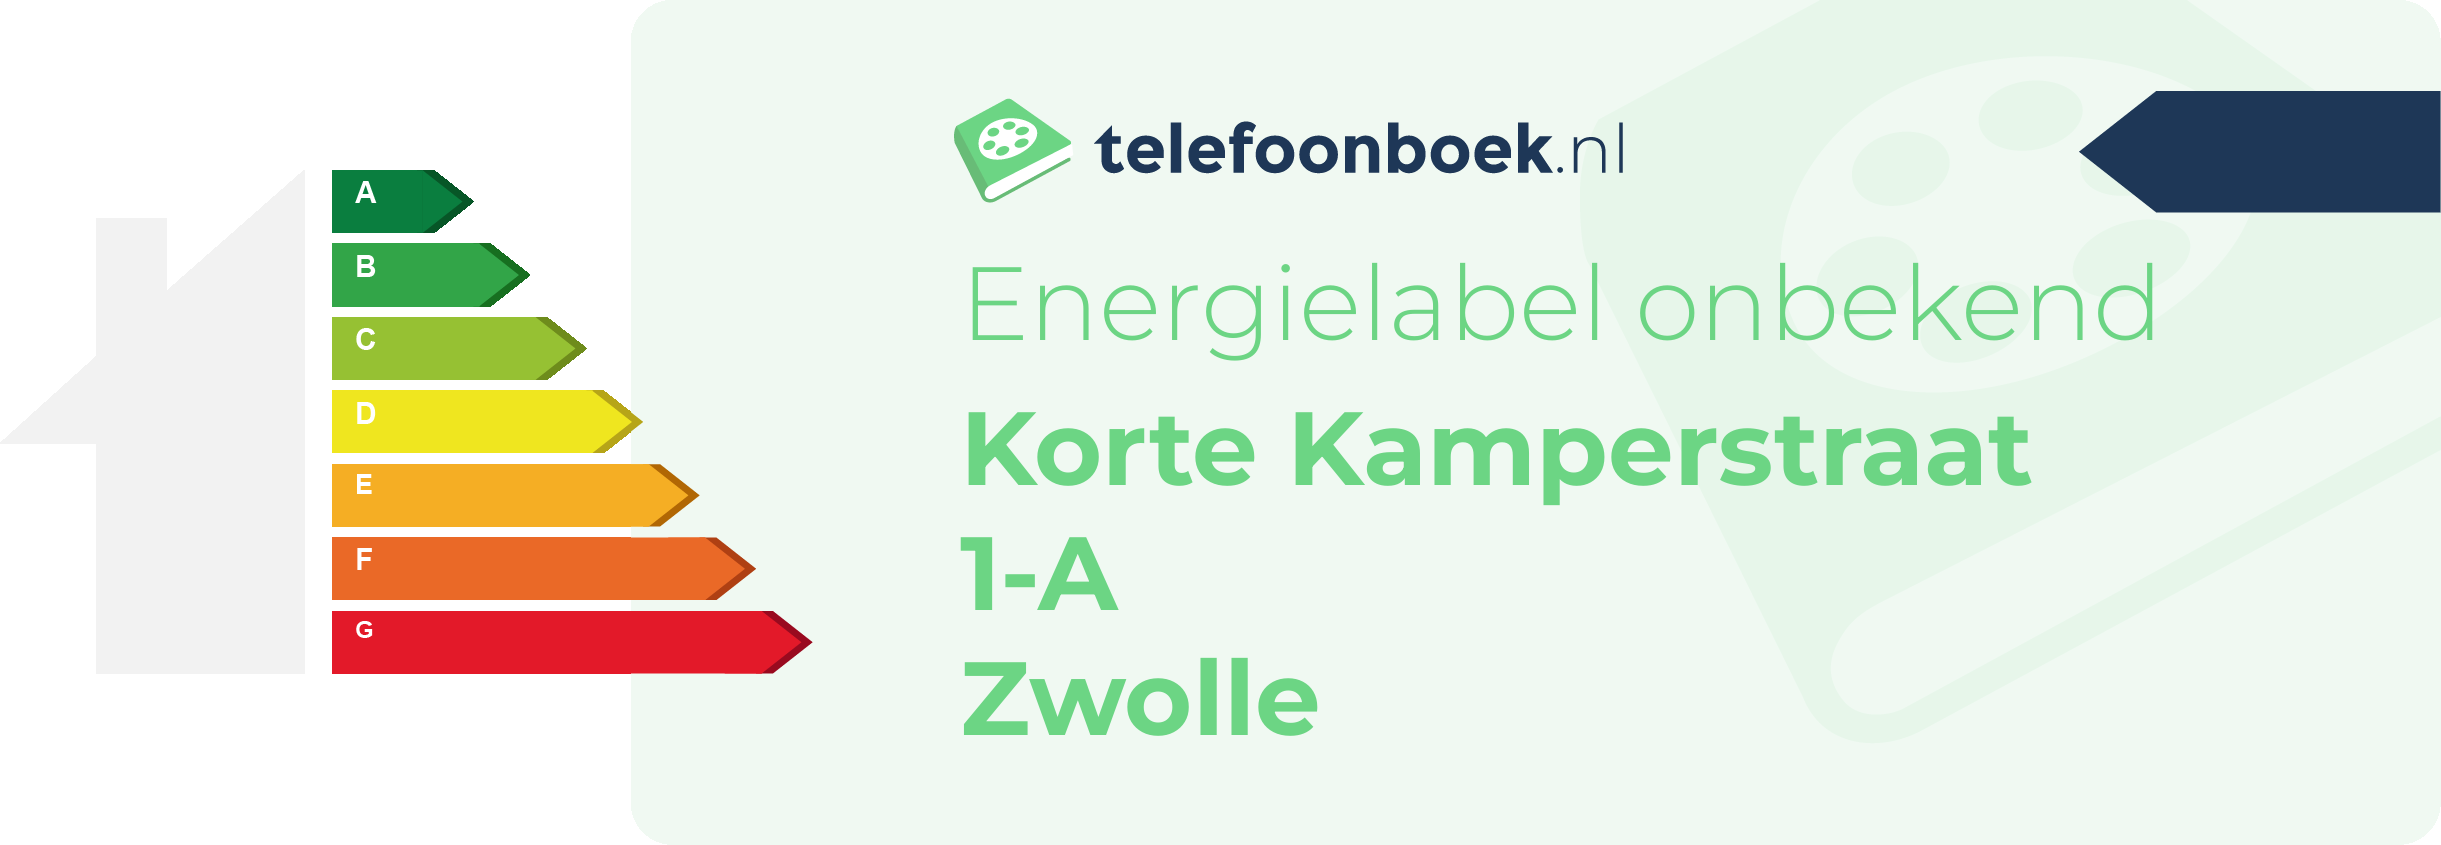 Energielabel Korte Kamperstraat 1-A Zwolle